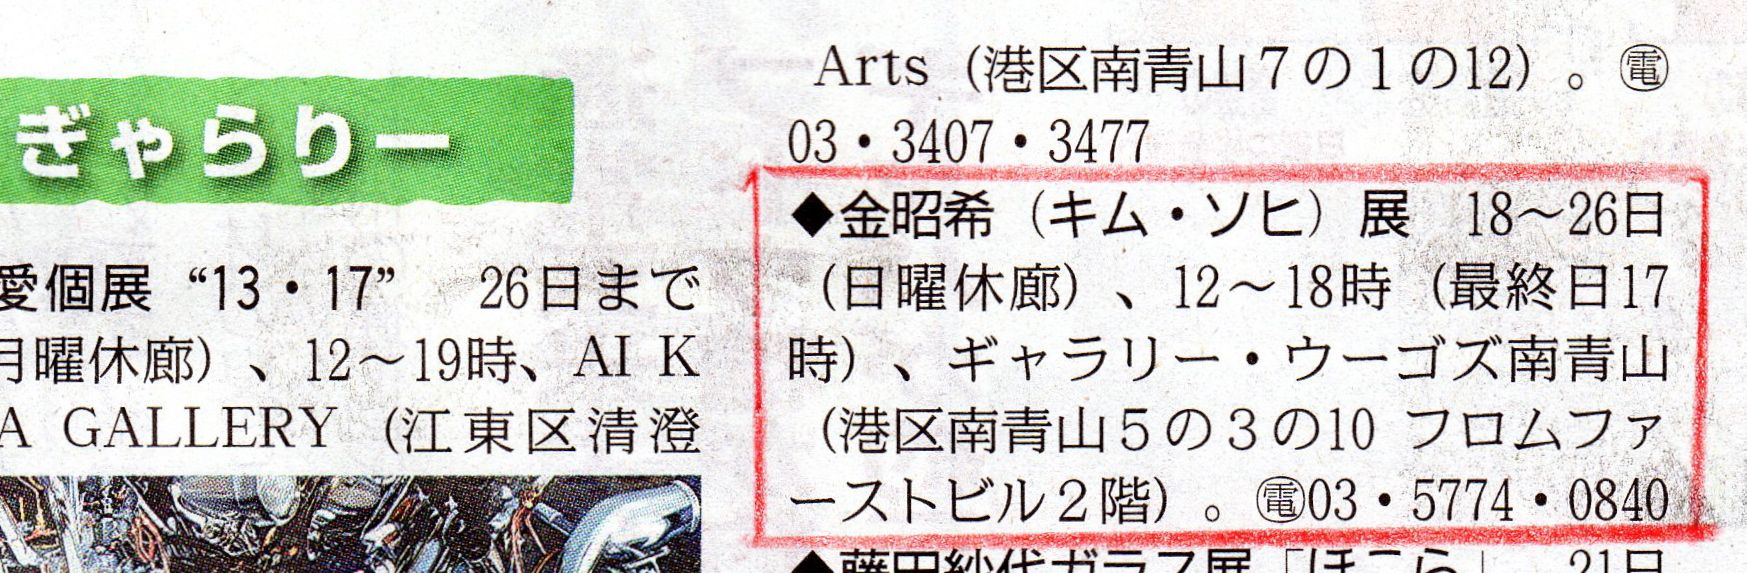 東京新聞、10月17日朝刊ぎゃらりー欄で告知されました。_f0257137_8571038.jpg